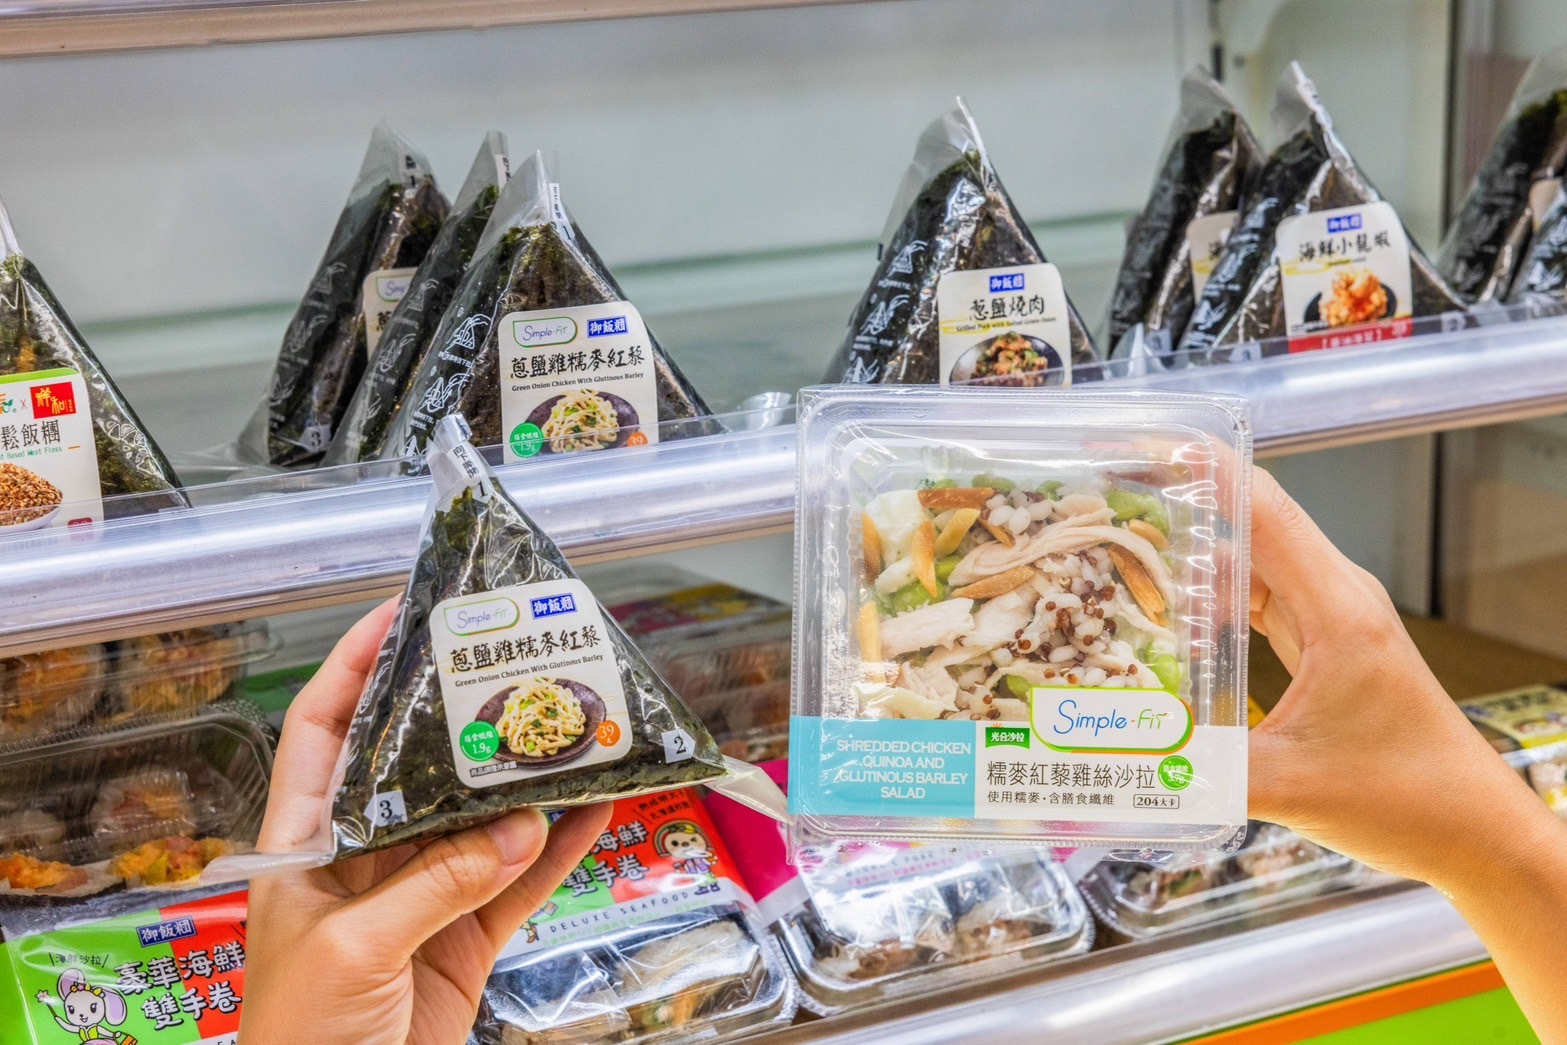 【健康飲食新選擇】7-ELEVEN推出熱量低於500大卡的營養菜單